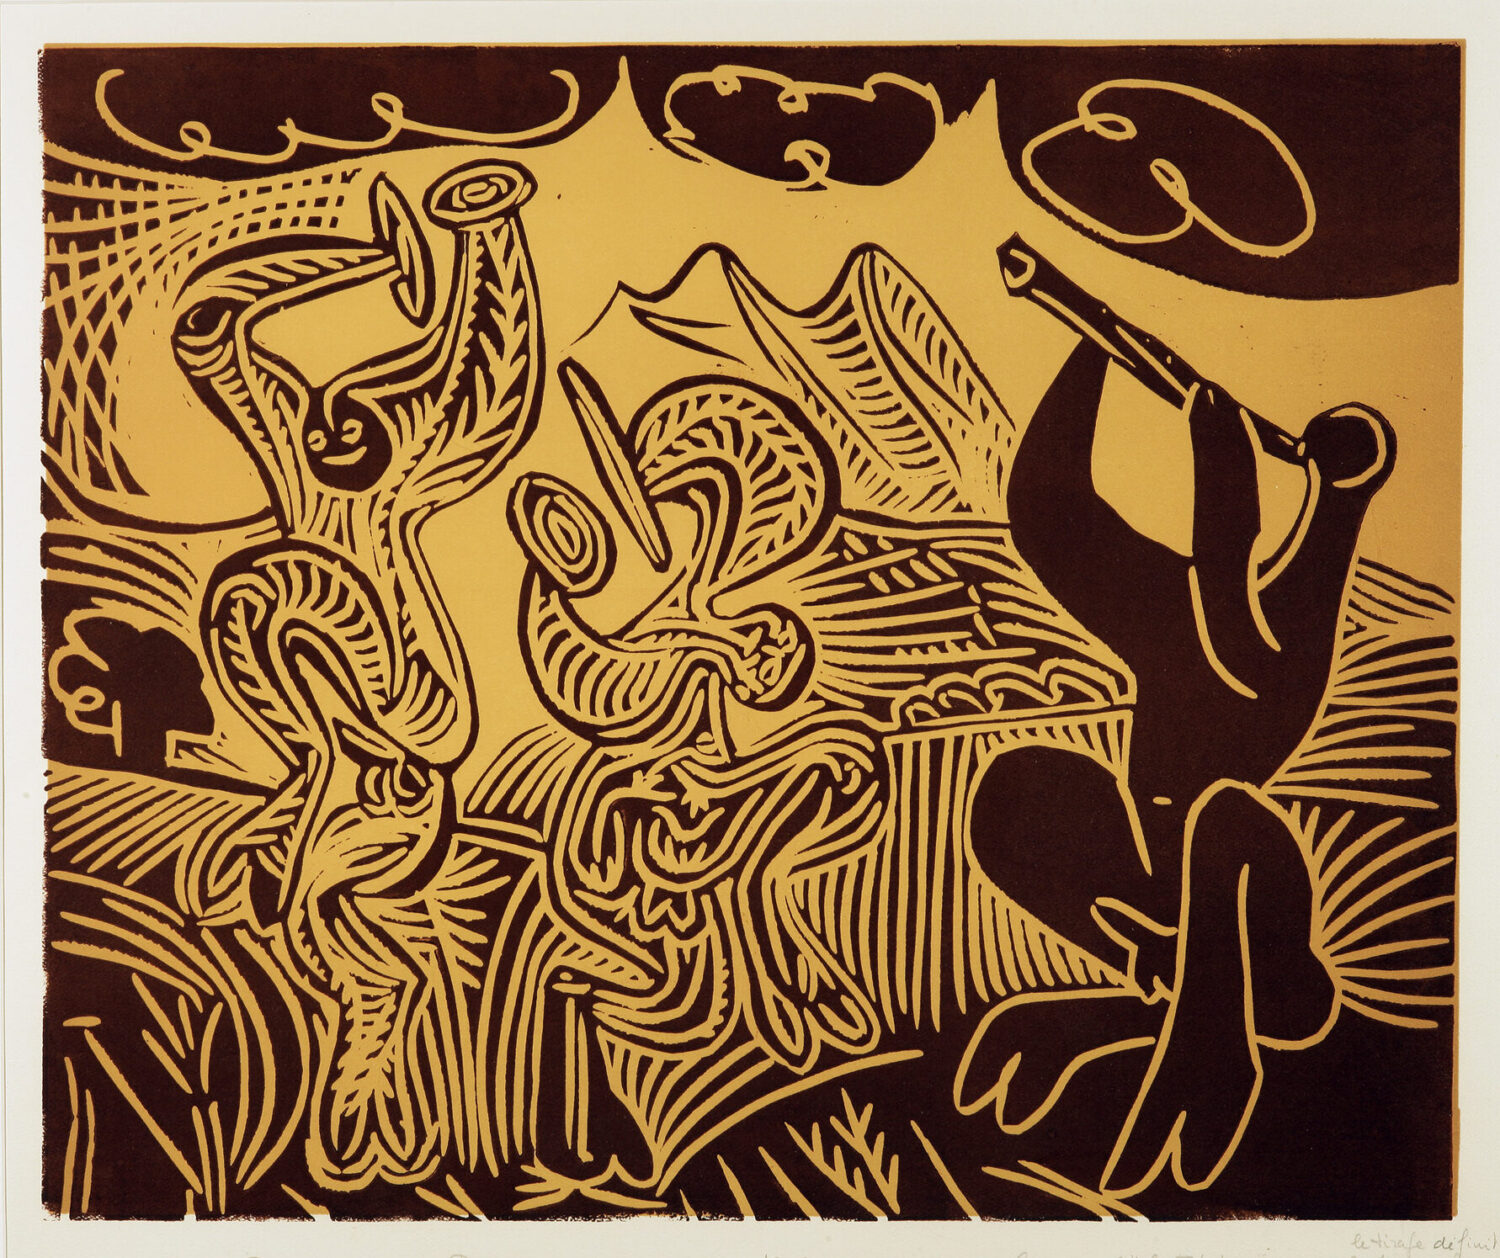 thumbnail of Lino-cut by Pablo Picasso titled Danseurs et Musicien.